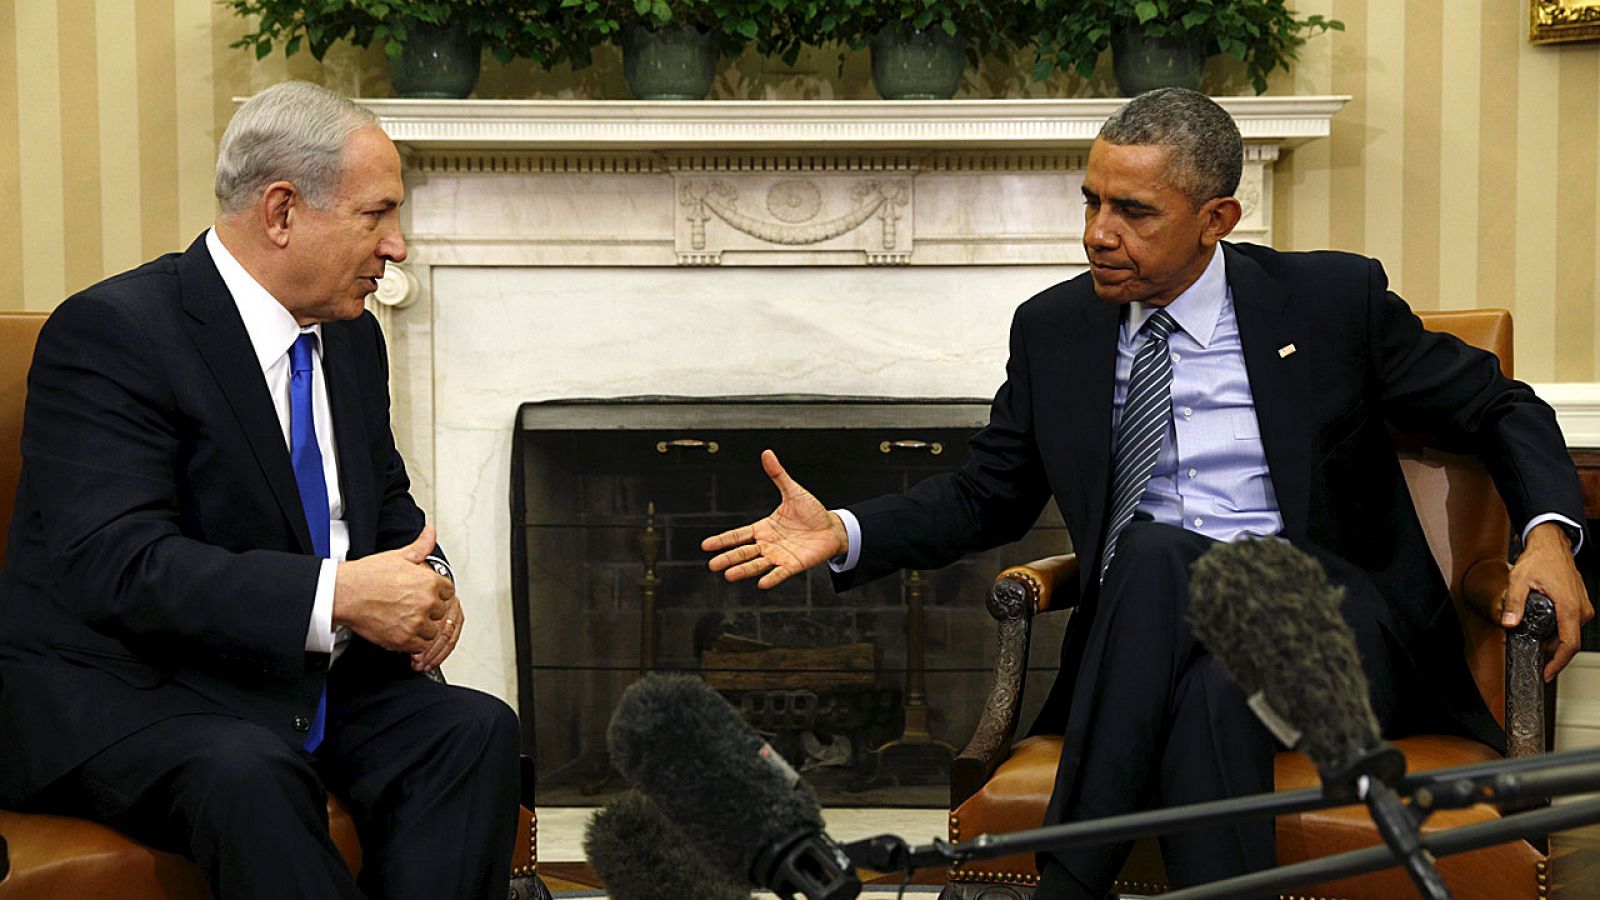 El primer ministro israelí, Benjamin Netanyahu, conversa con el presidente estadounidense Barack Obama, durante la reunión que han mantenido este martes en la Casa Blanca.